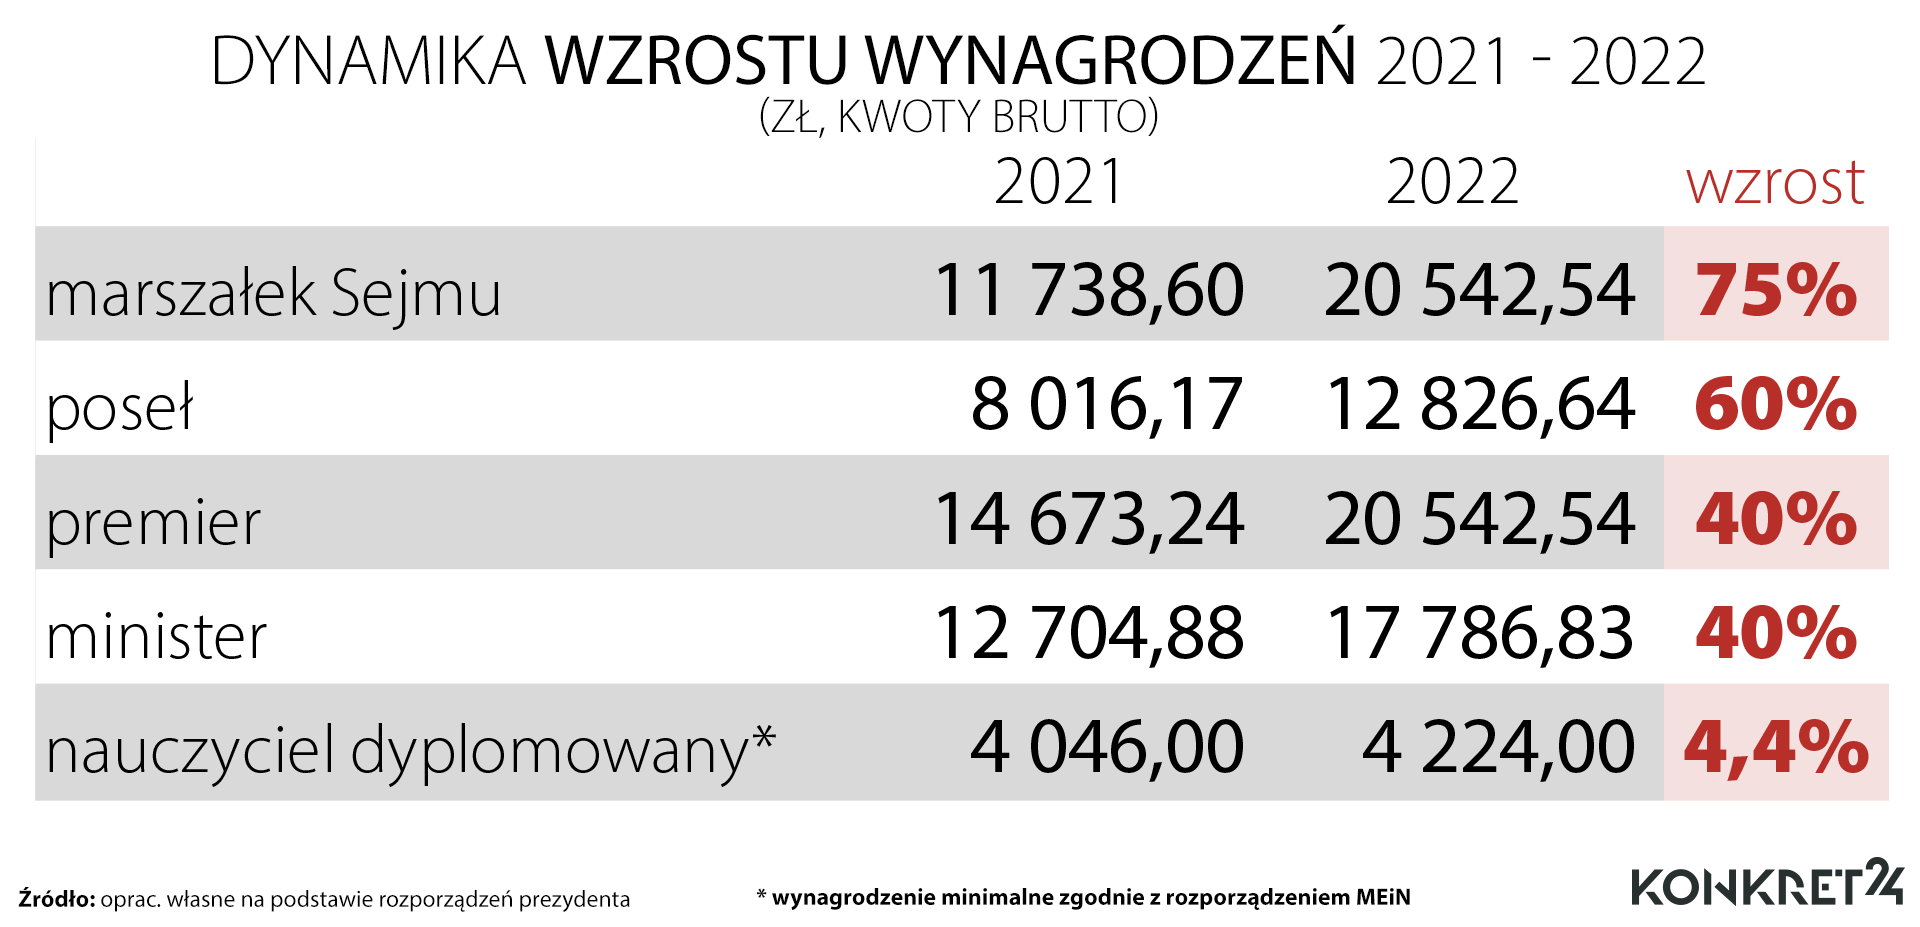 Dynamika wzrostu wynagrodzeń polityków i nauczycieli 2021 - 2022